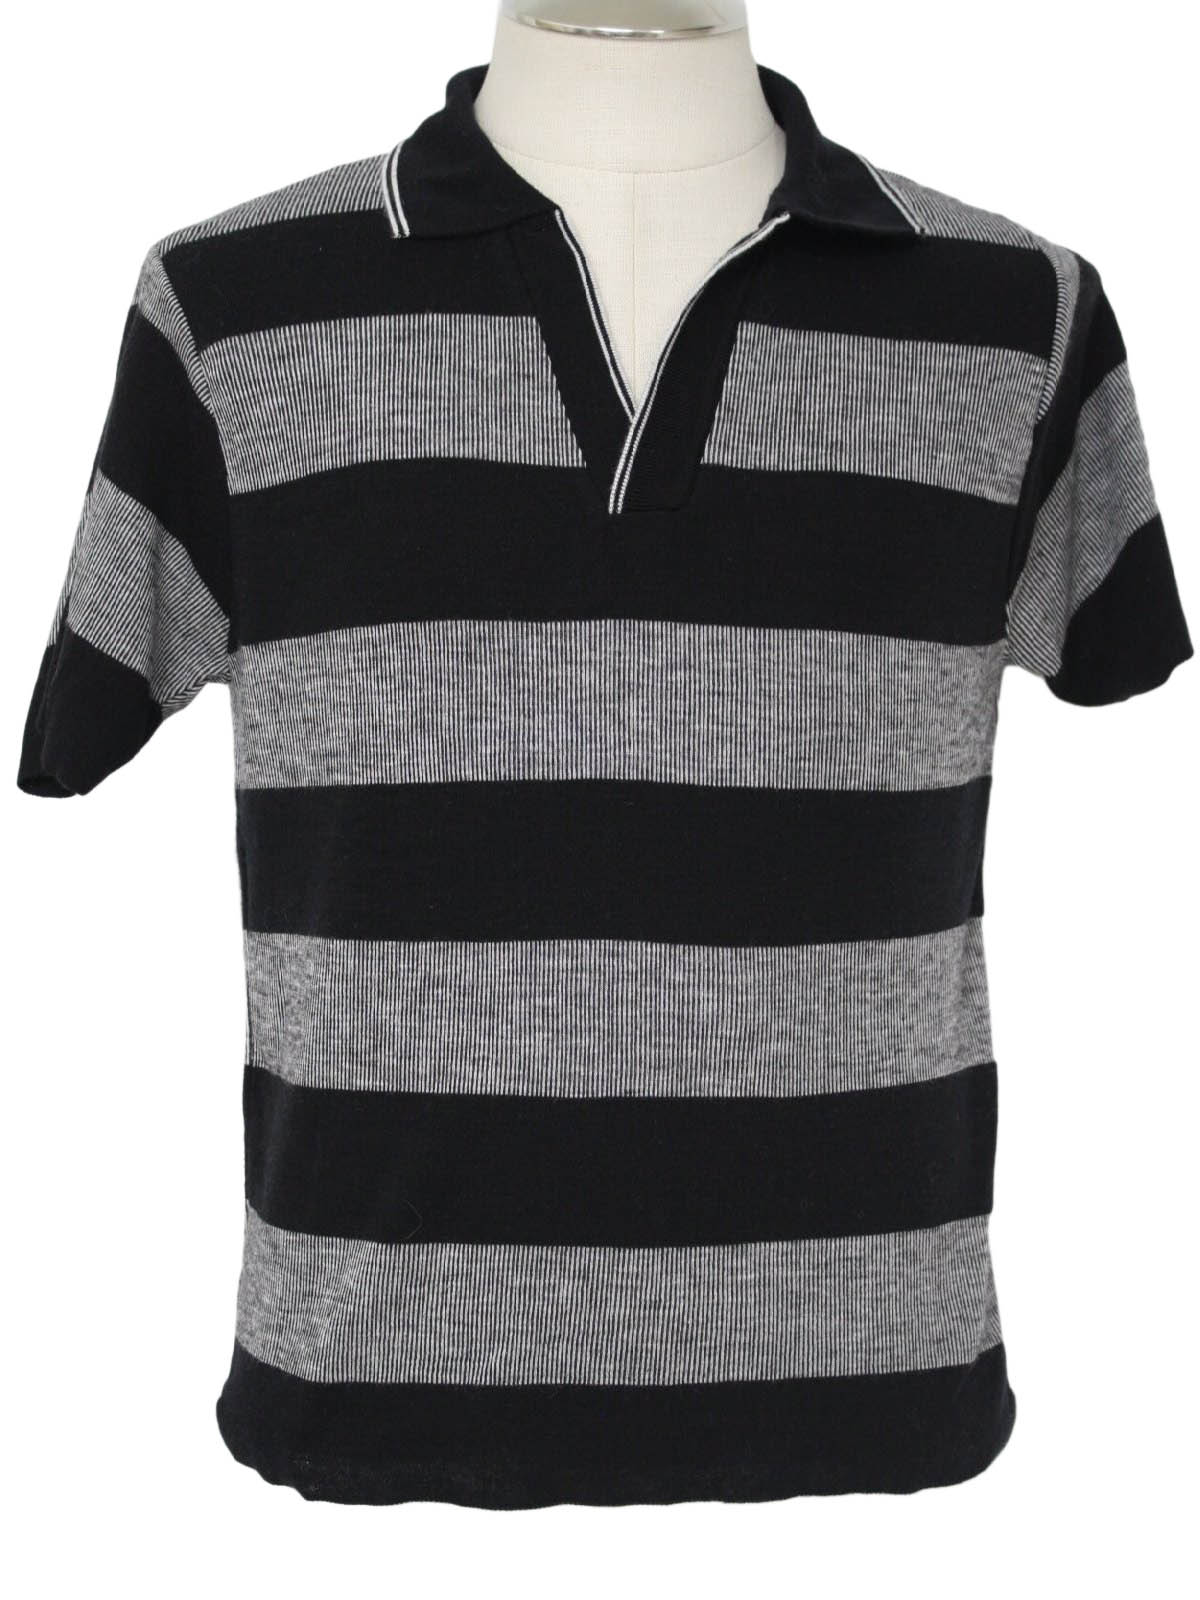 Vintage Mt. Pleasant 80's Knit Shirt: 80s -Mt. Pleasant- Mens black and ...